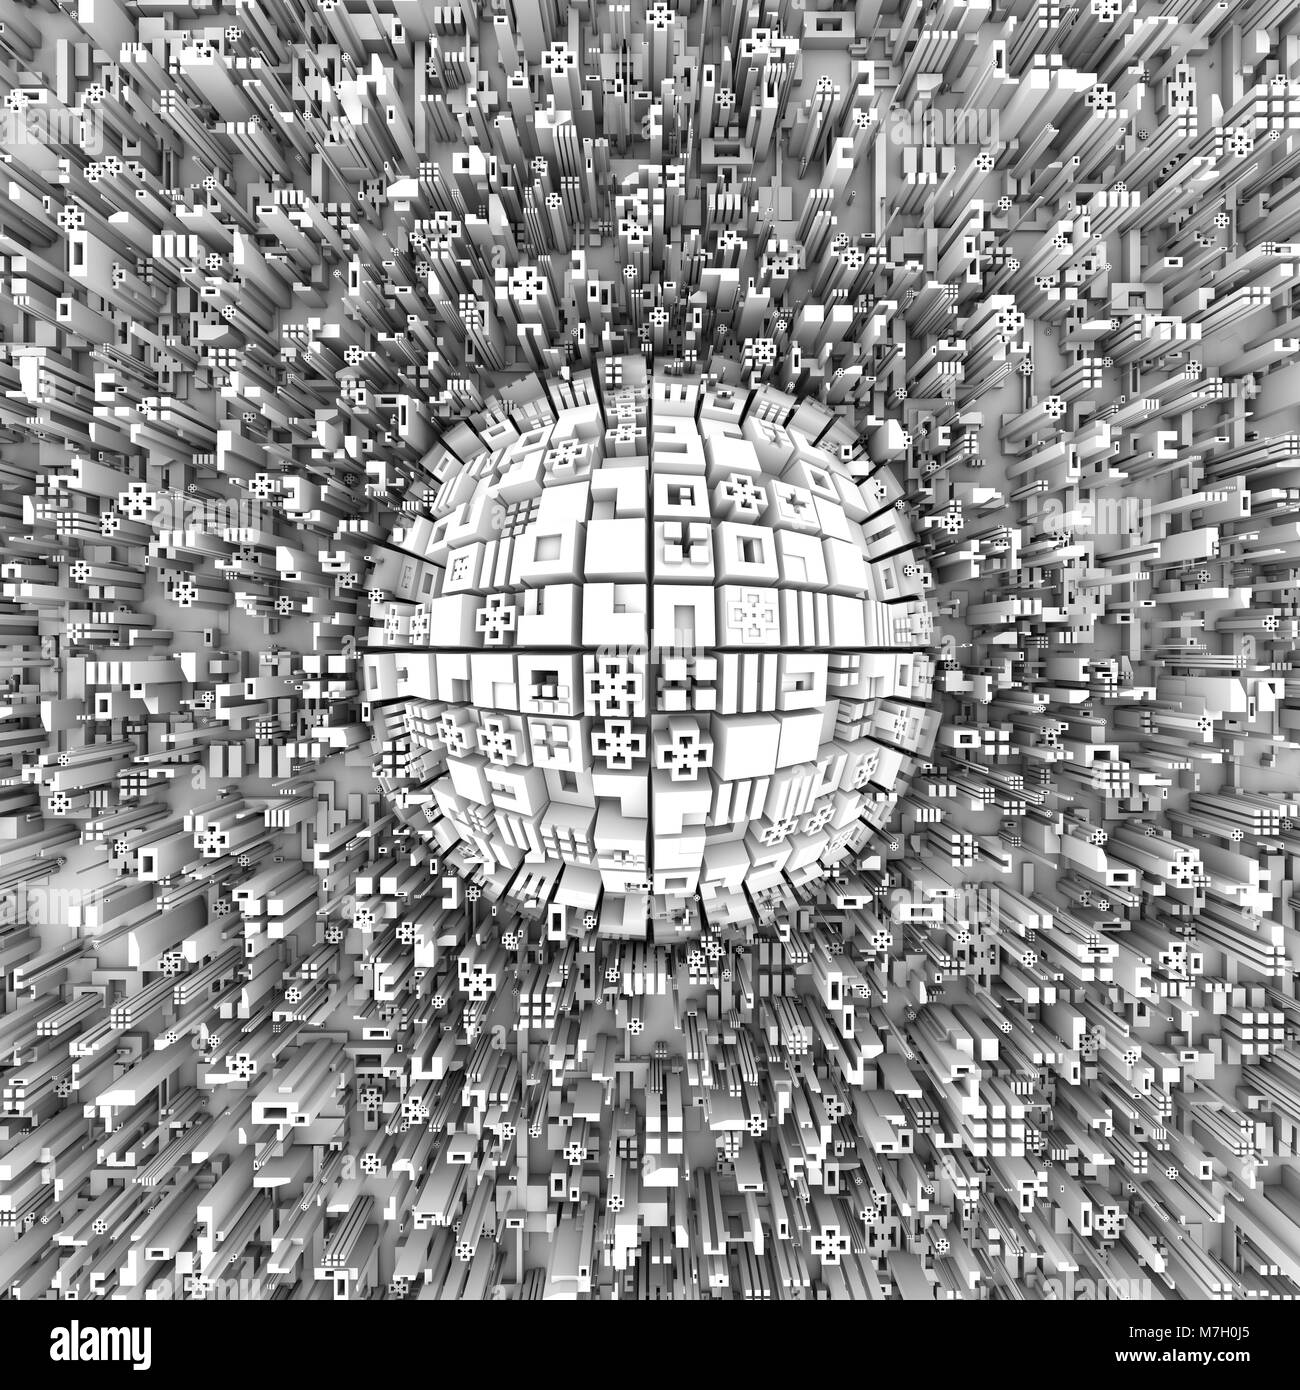 Vue de dessus sur un abrégé ville avec des gratte-ciel autour d'une sphère massive dans le centre, constitué de différentes formes géométriques. Light abstract modern Banque D'Images